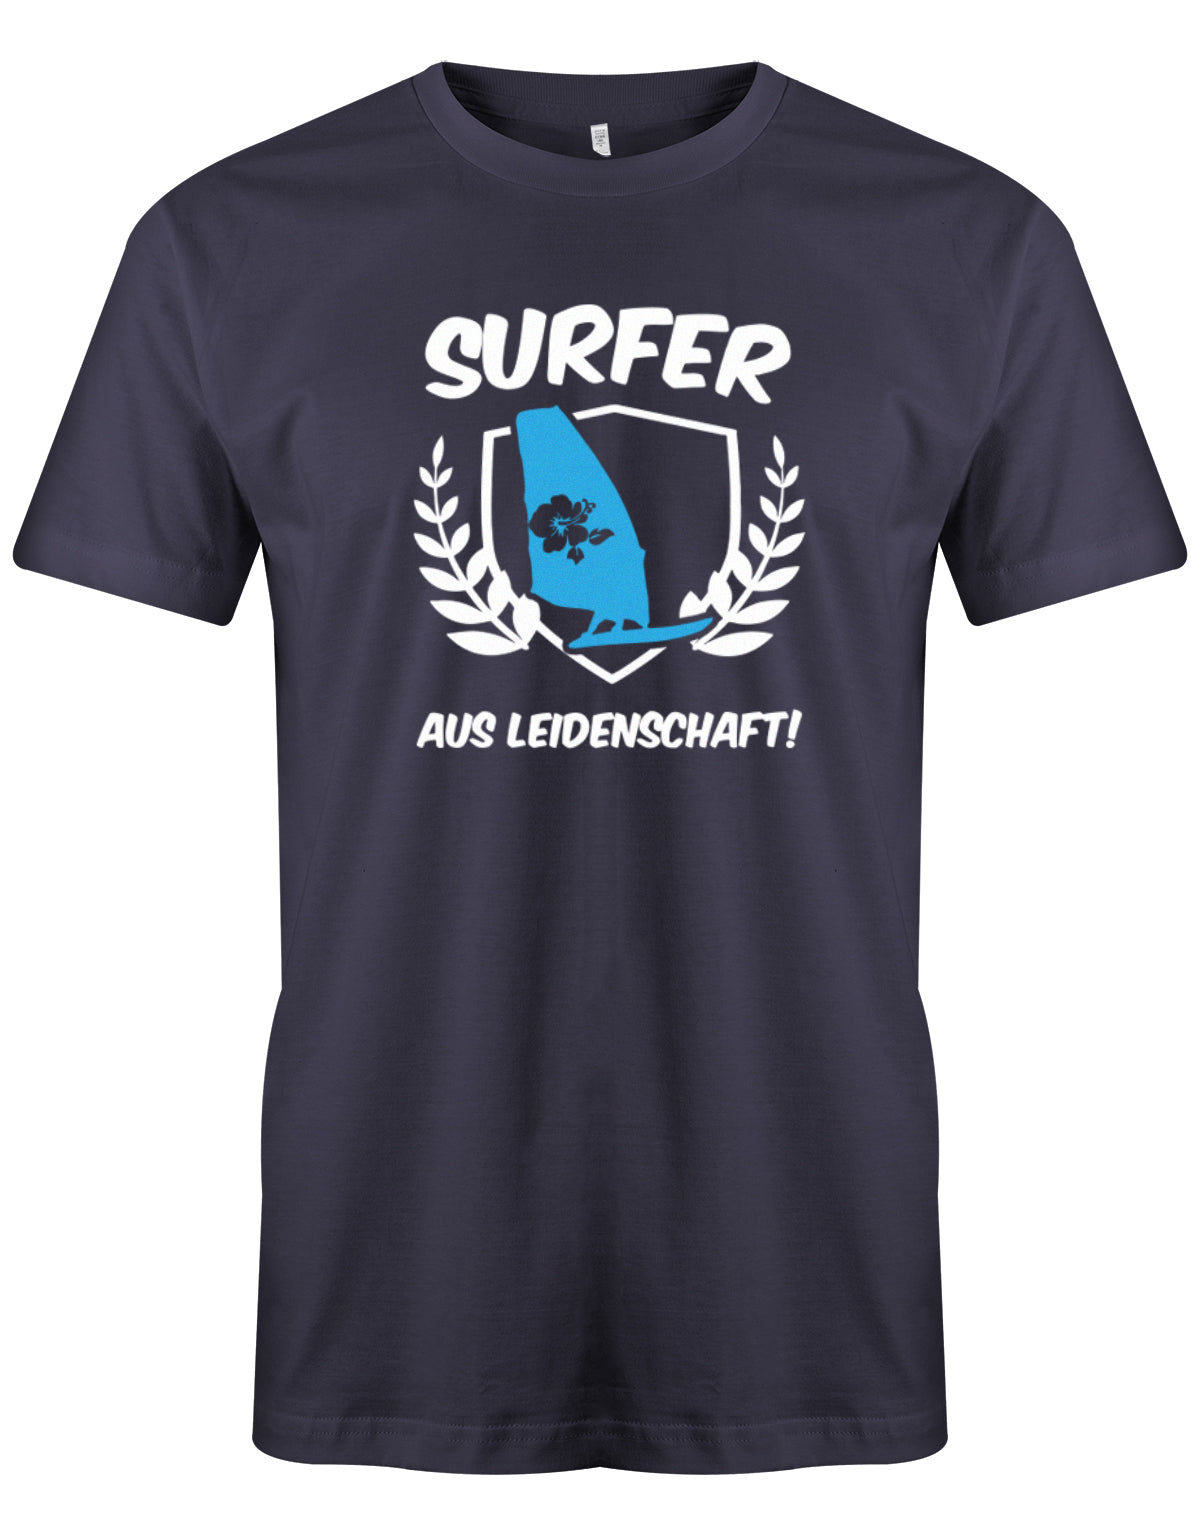 Das lustige Surfer t-shirt bedruckt mit "Surfer Aus Leidenschaft mit Surfer und Hibiskus Segel. Navy